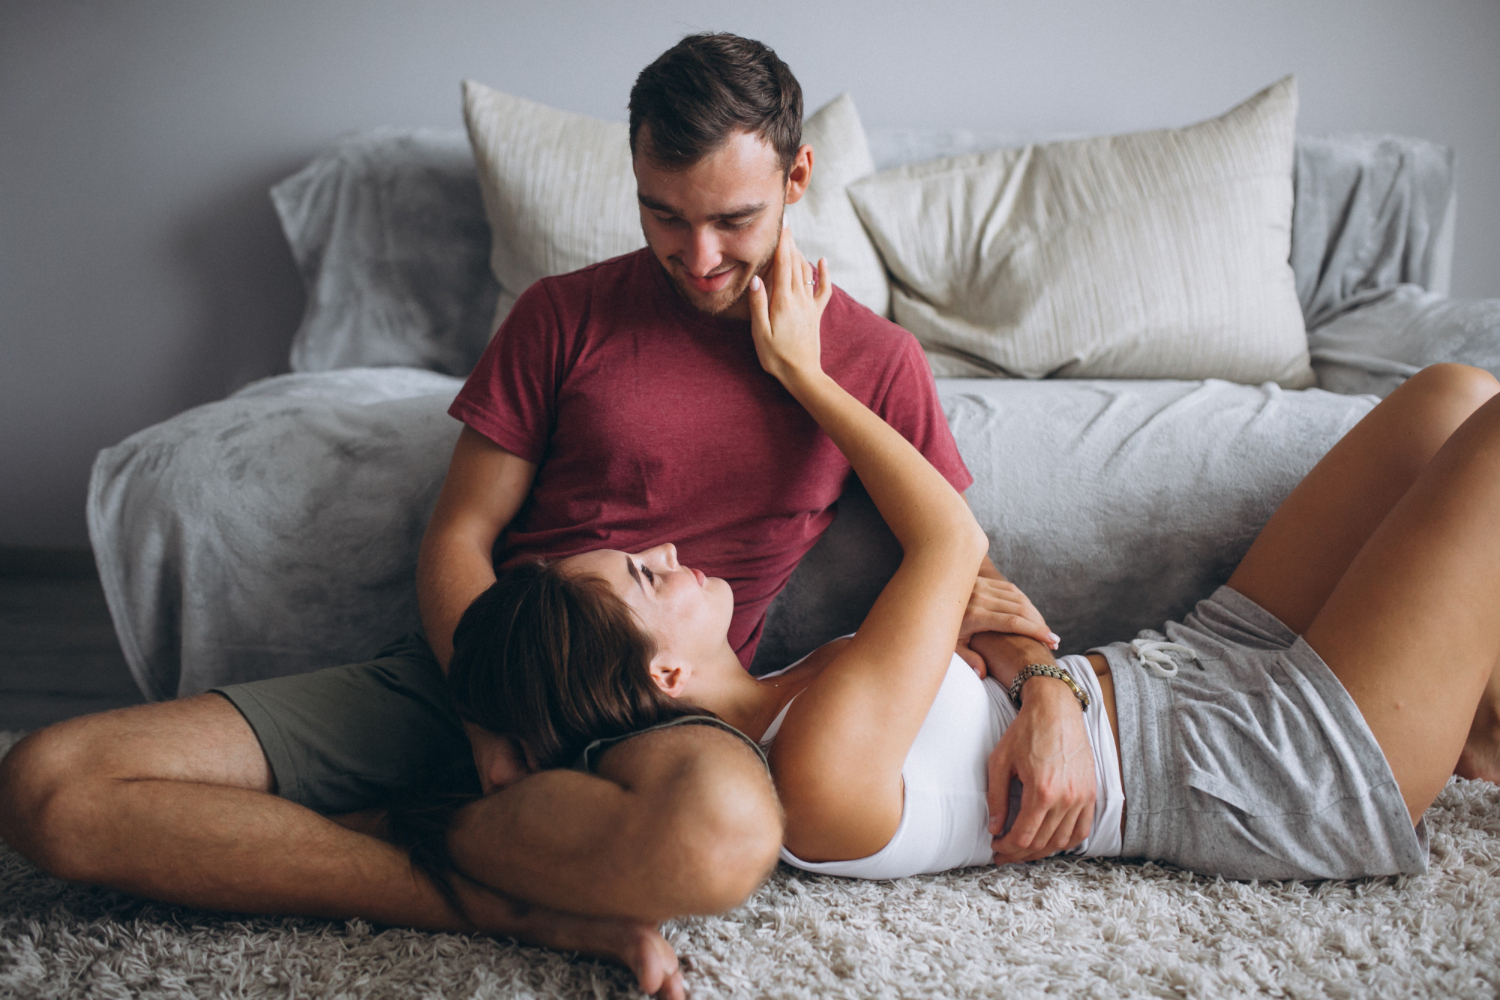 Как вести грязные разговоры с партнером: 5 советов секс-экспертов
